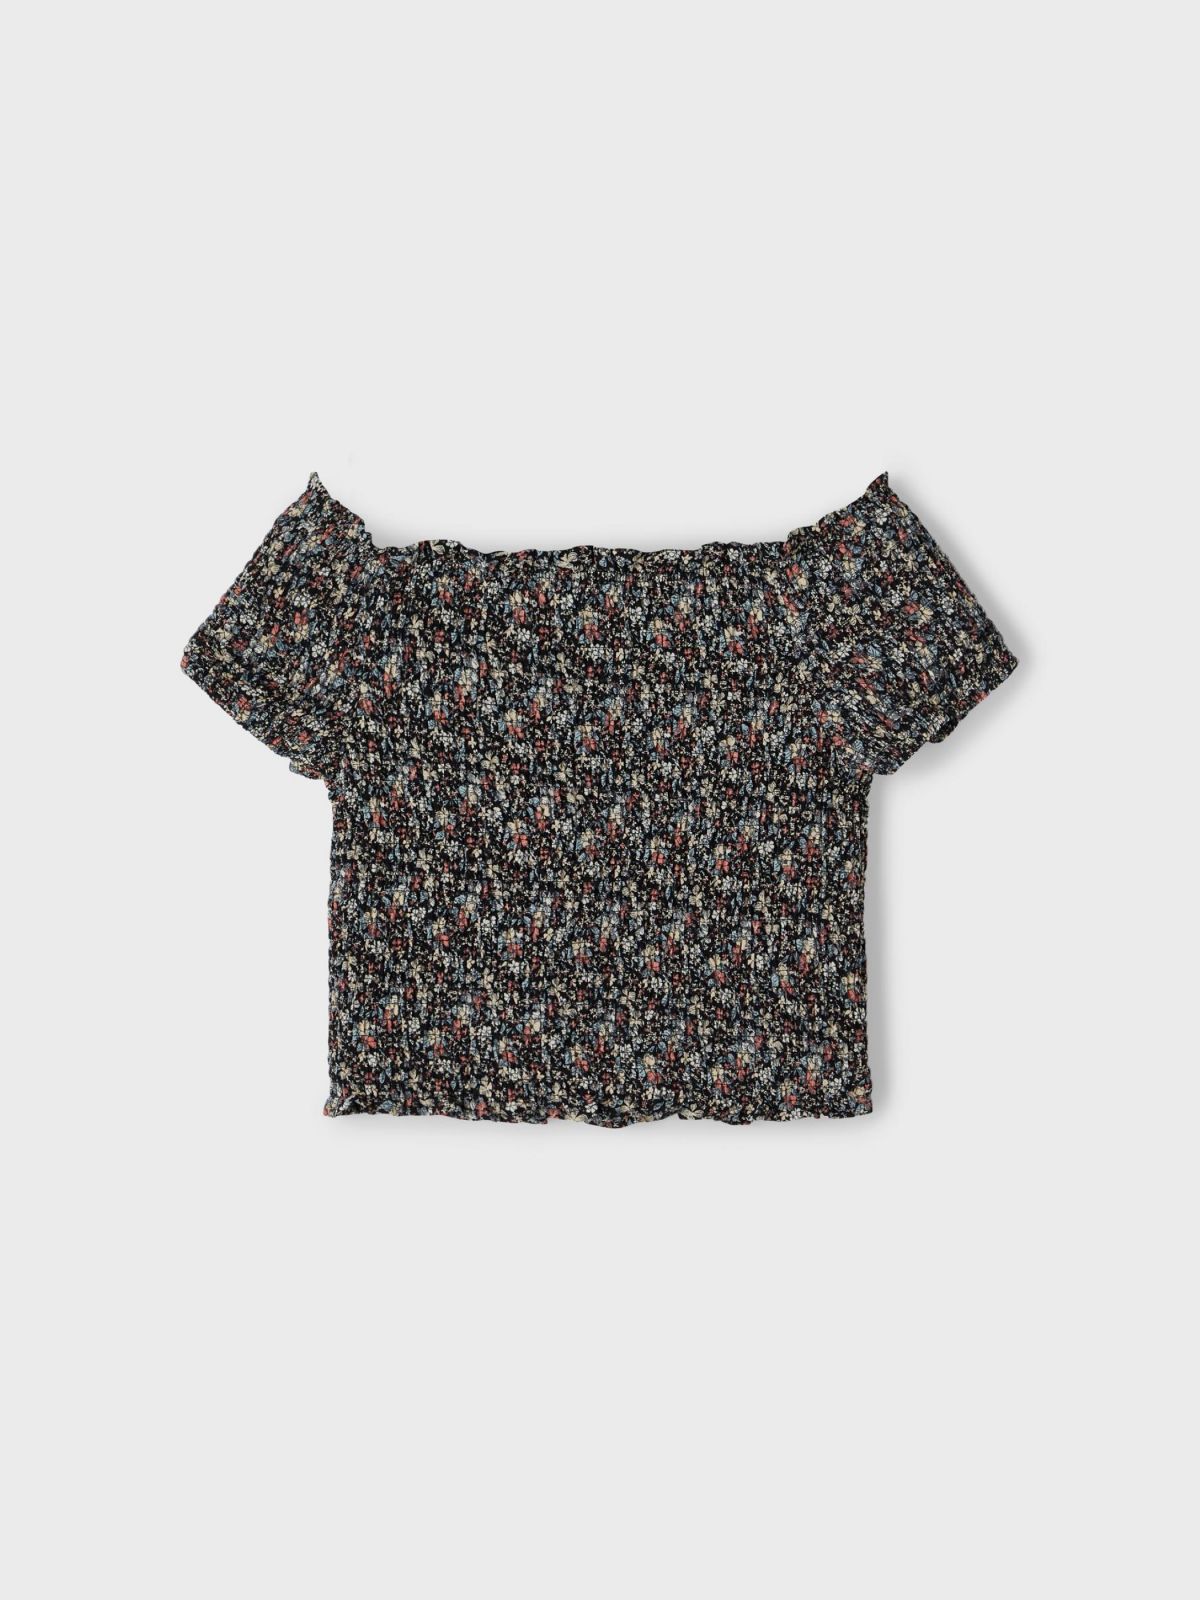  חולצת אוף שולדרס בהדפס פרחים / TEEN של LMTD